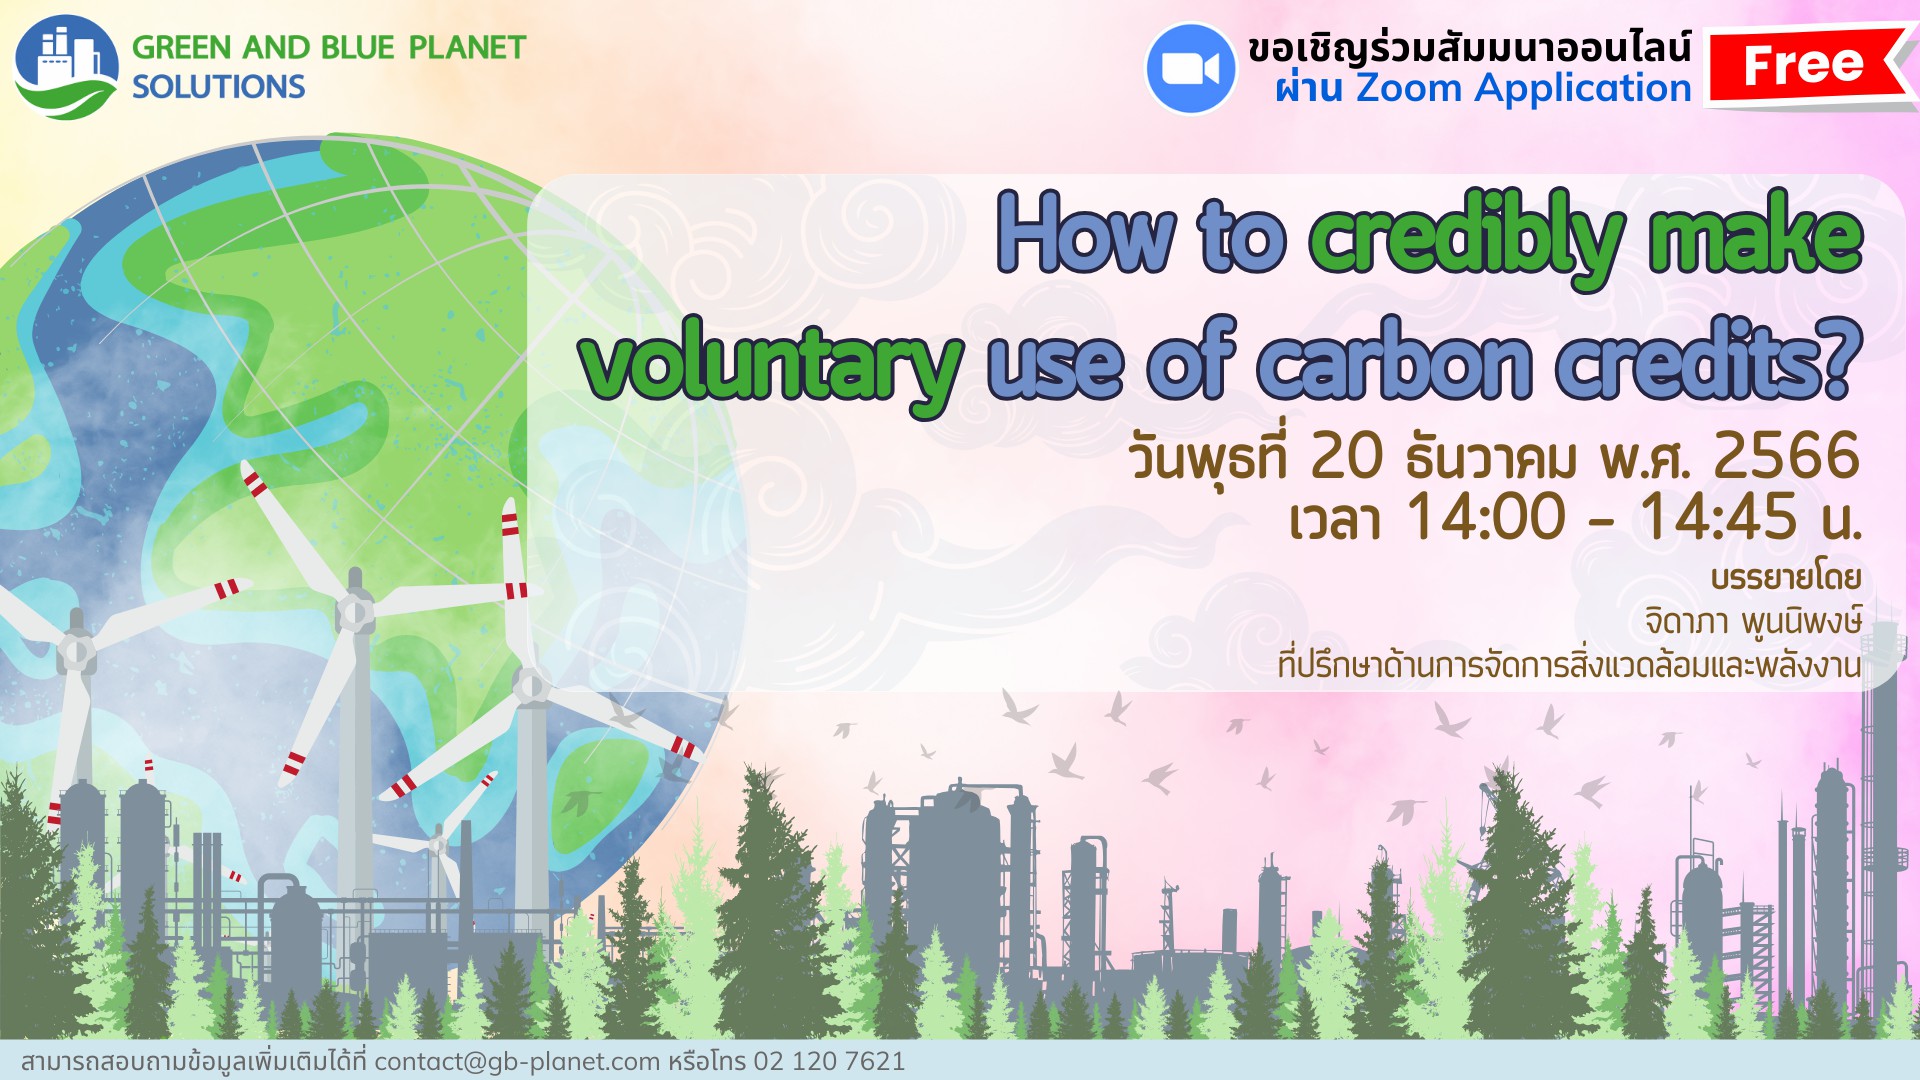 การจัดสัมมนาออนไลน์ เรื่อง How to credibly make voluntary use of carbon credits?